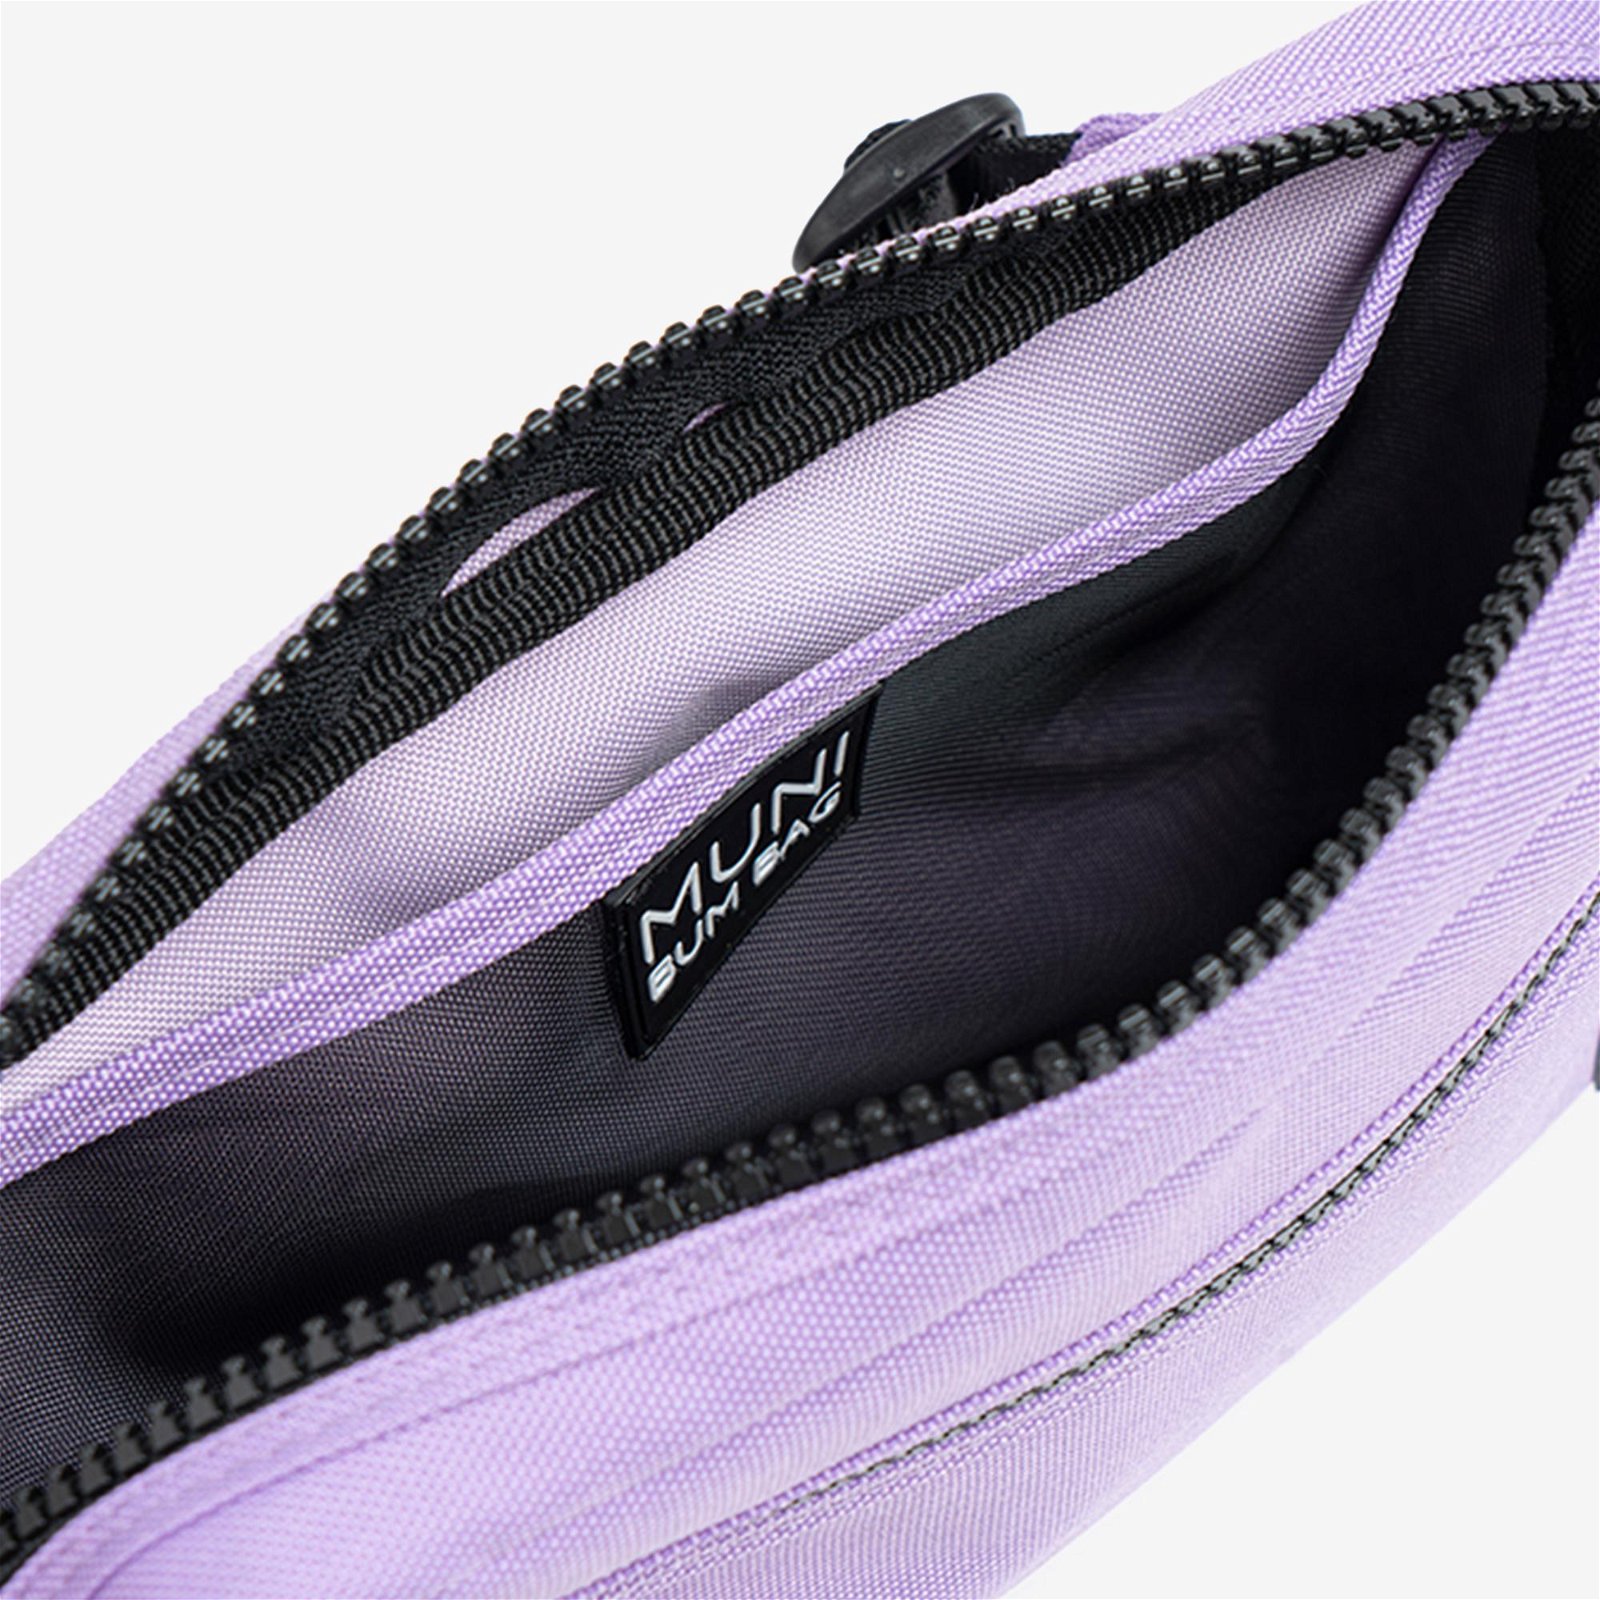 MuniBum Bag Baby Purple Under Arm